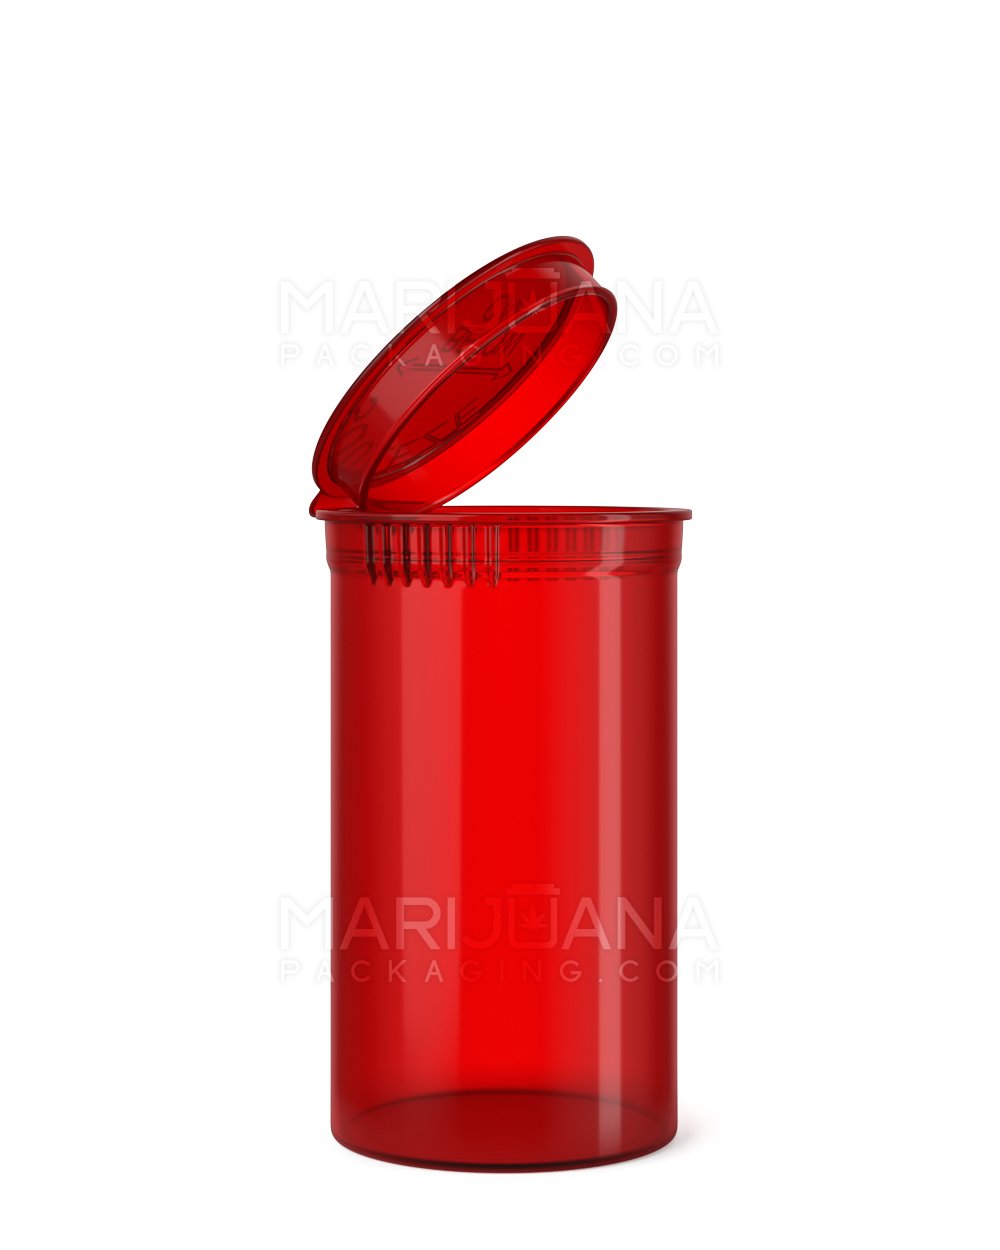 Child Resistant Transparent Red Pop Top Bottles | 19dr - 3.5g | Sample - 1